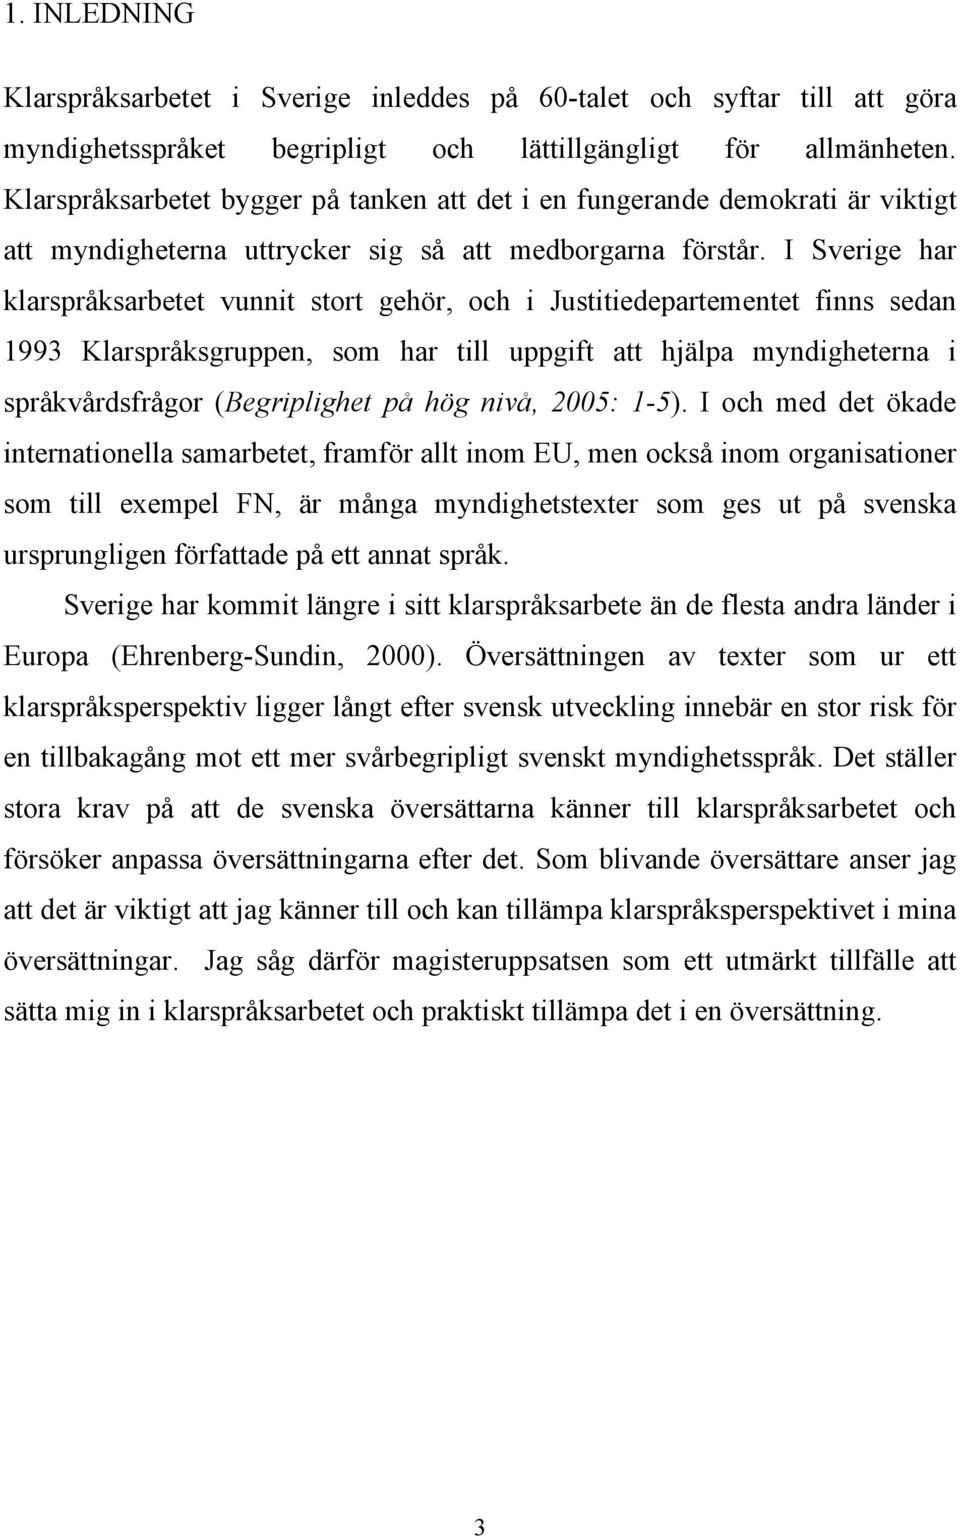 I Sverige har klarspråksarbetet vunnit stort gehör, och i Justitiedepartementet finns sedan 1993 Klarspråksgruppen, som har till uppgift att hjälpa myndigheterna i språkvårdsfrågor (Begriplighet på